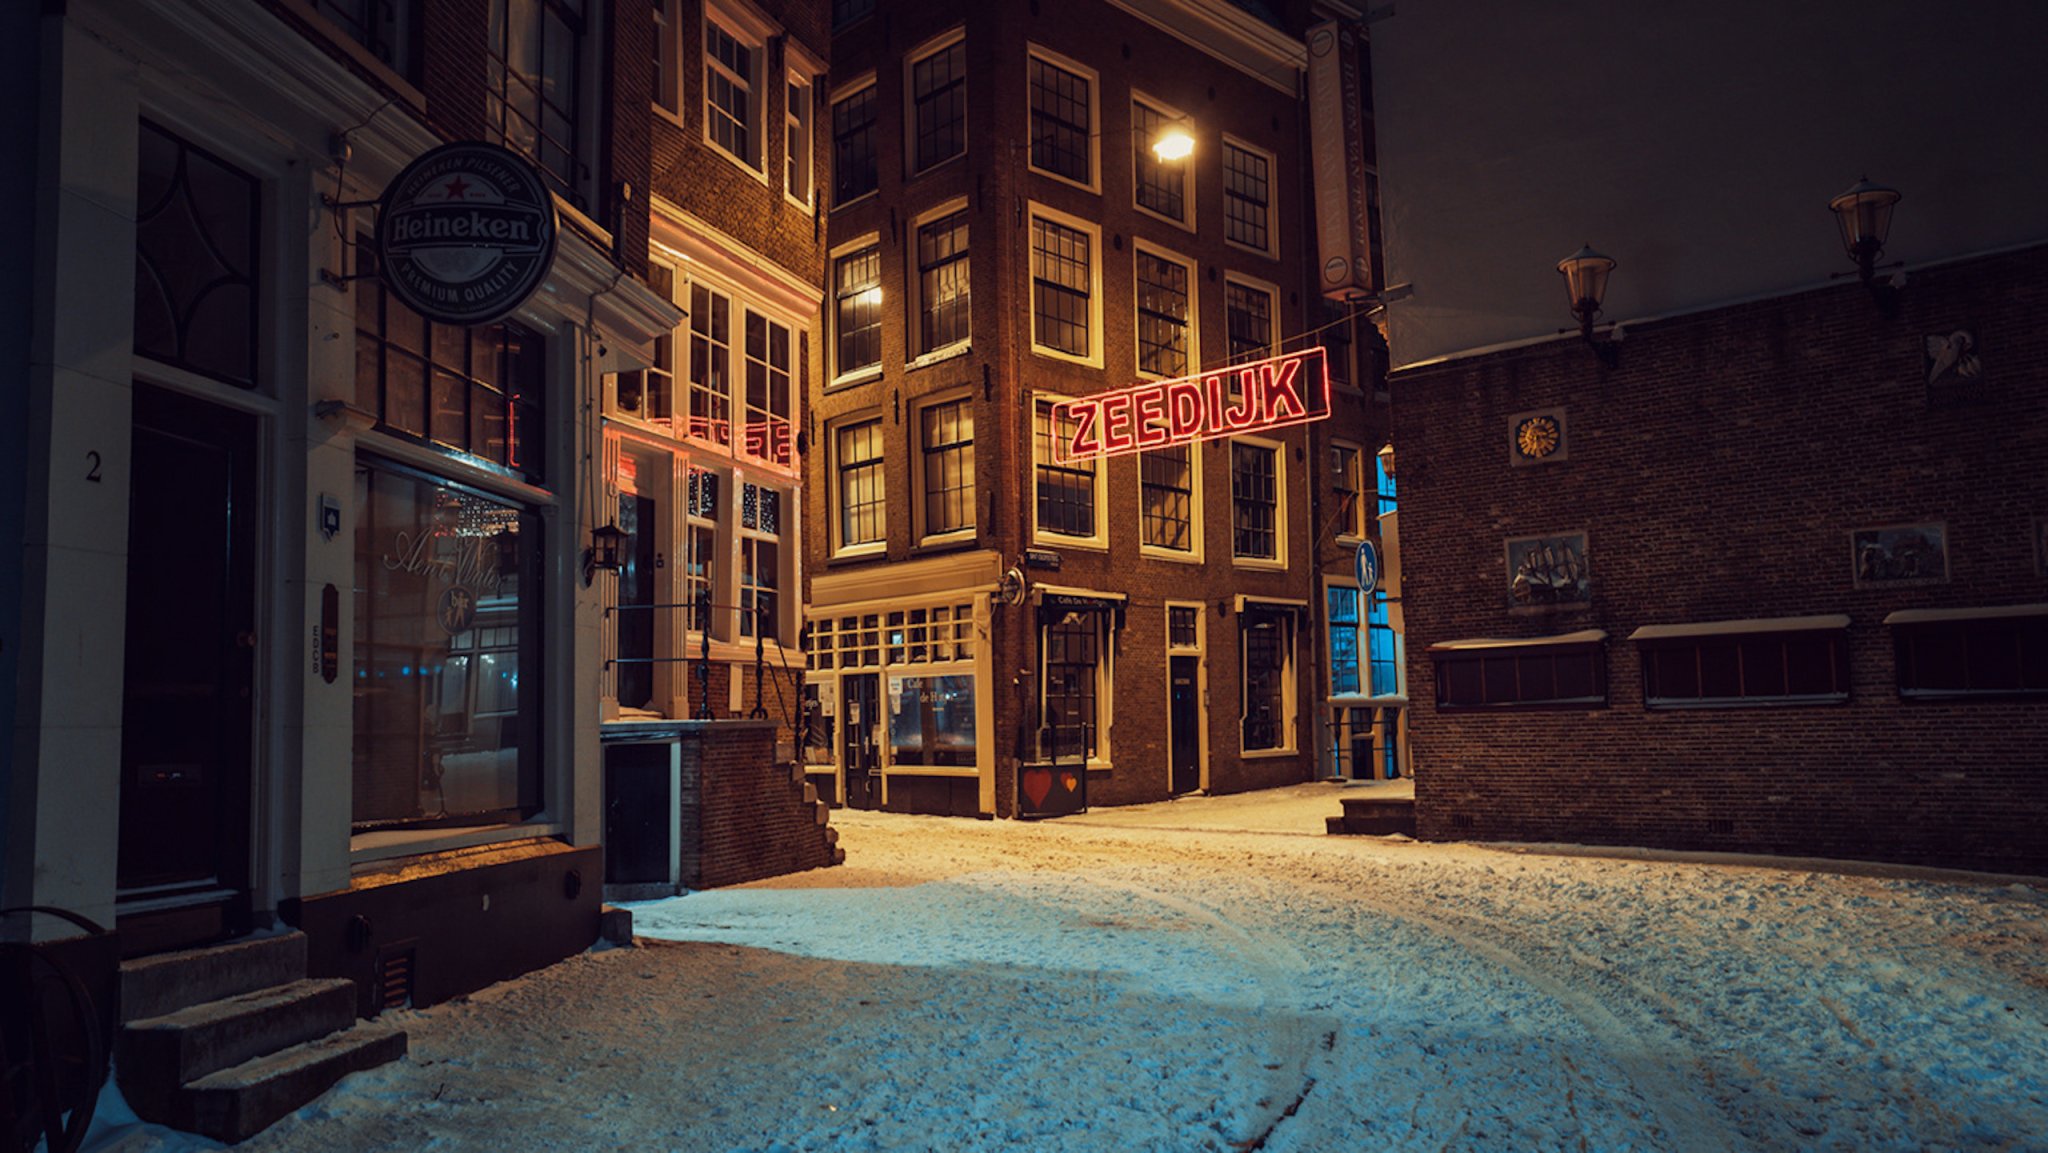 A cinematic peek at curfew in snowy Amsterdam